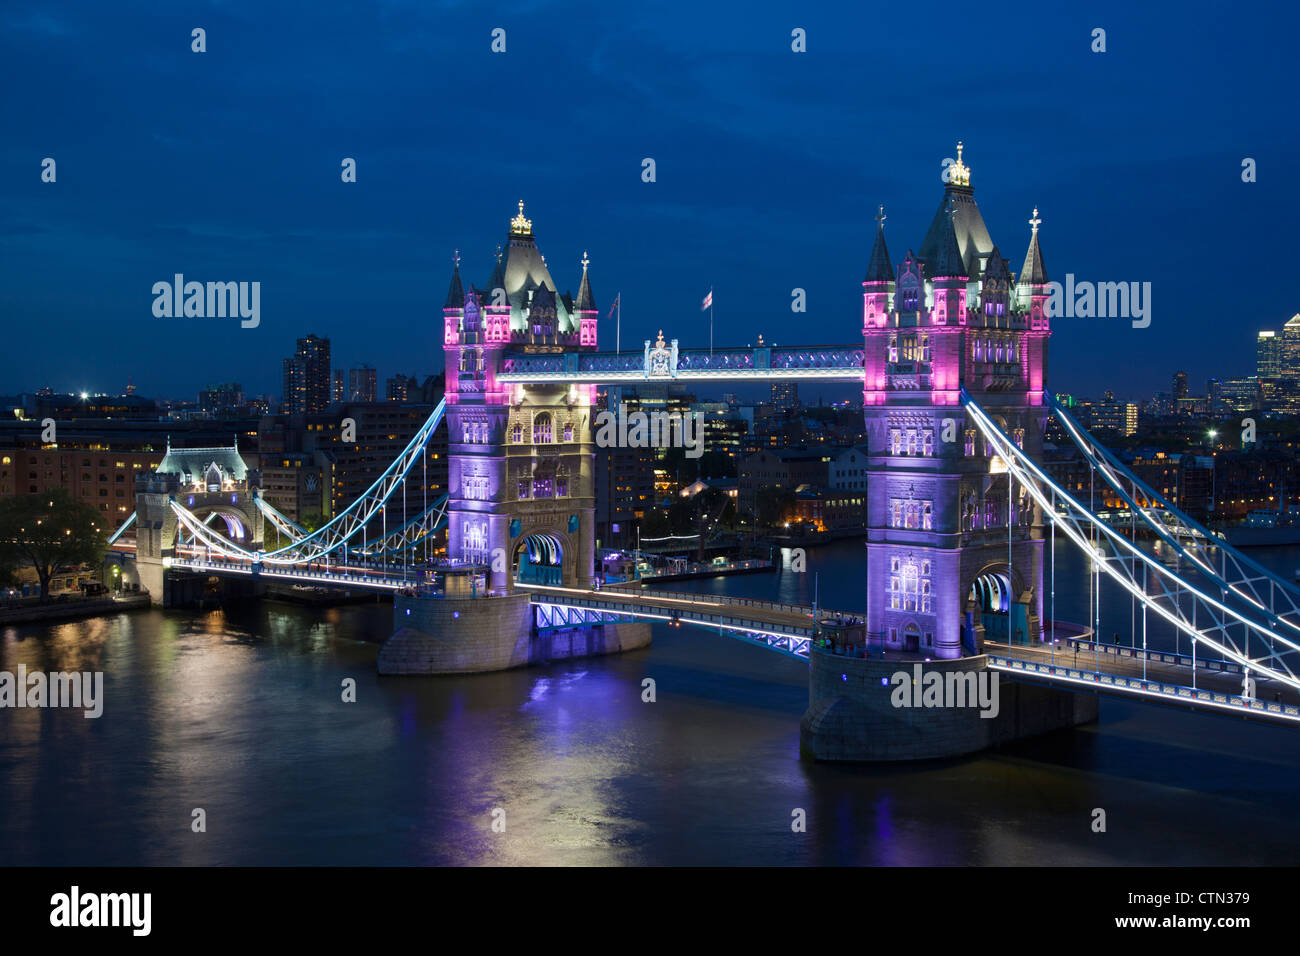 Tower Bridge with special illumination at dusk, London, England, UK, United Kingdom, Europe Stock Photo